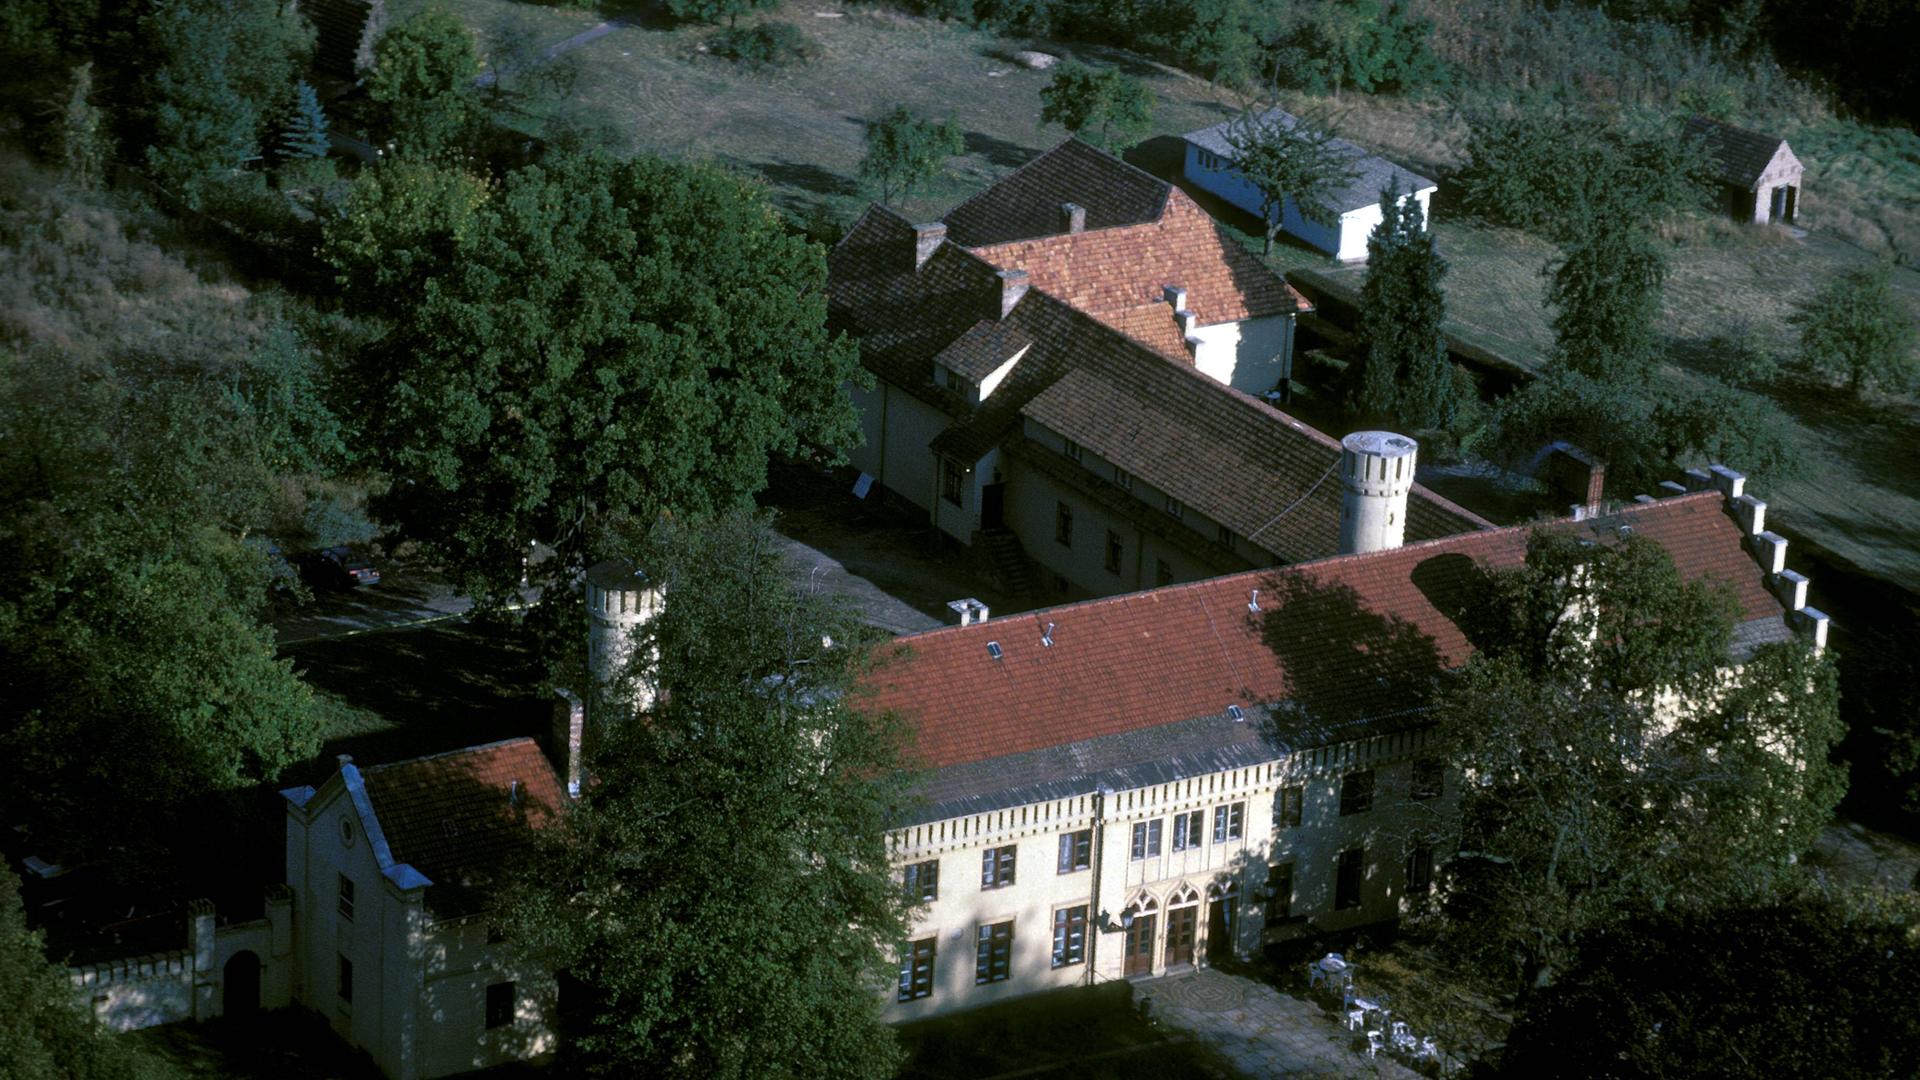 Luftaufnahme von Schloss Petzow mit Landschaftspark von Lenne in Petzow bei Potsdam.